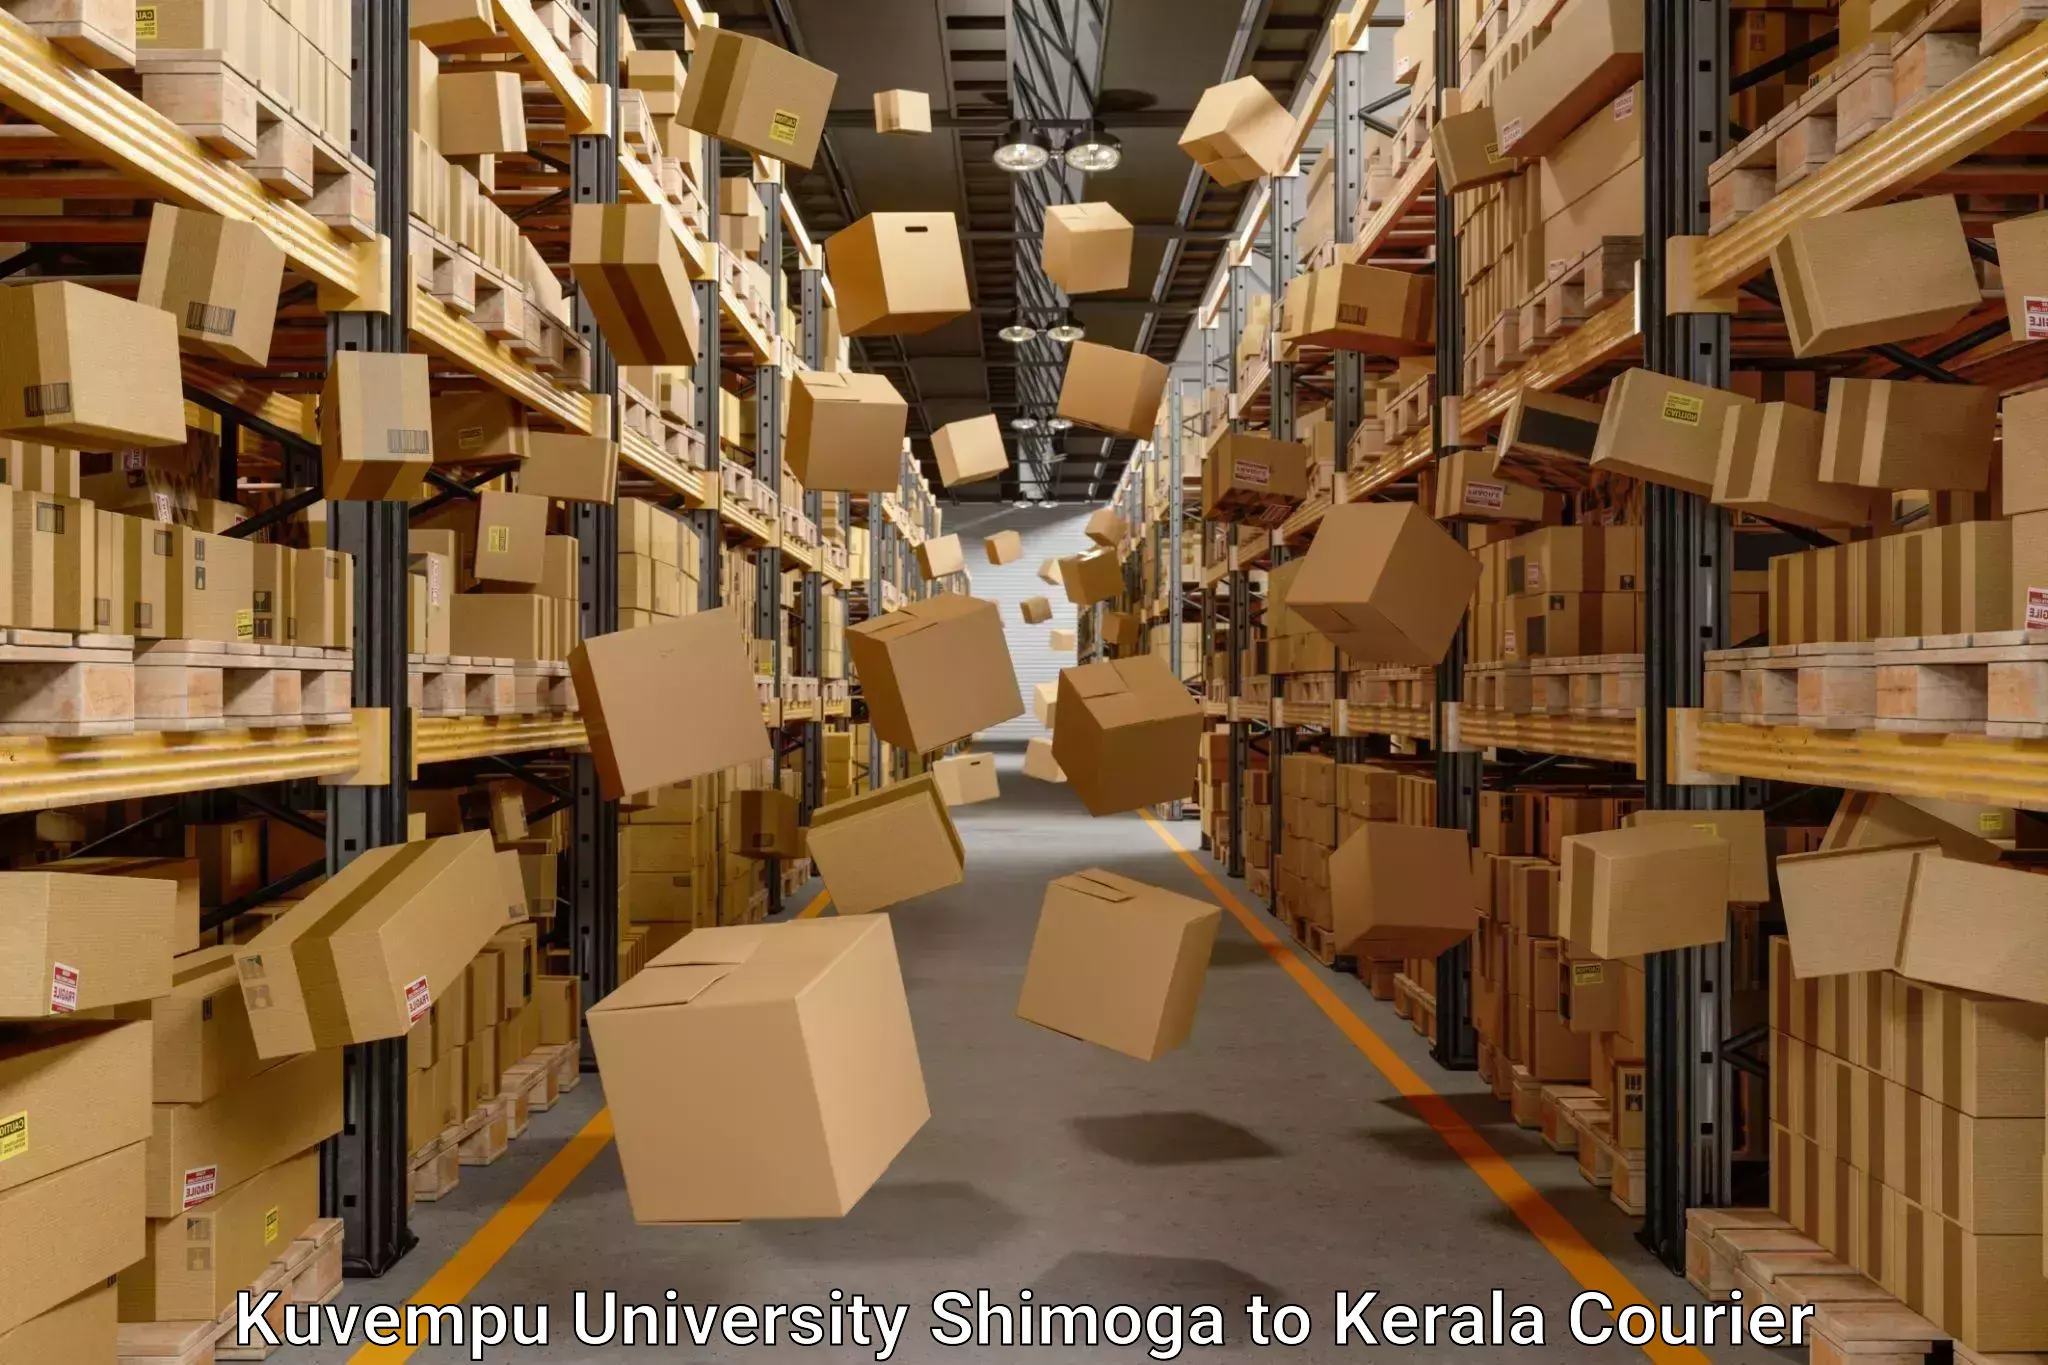 Personalized moving service Kuvempu University Shimoga to Kattappana